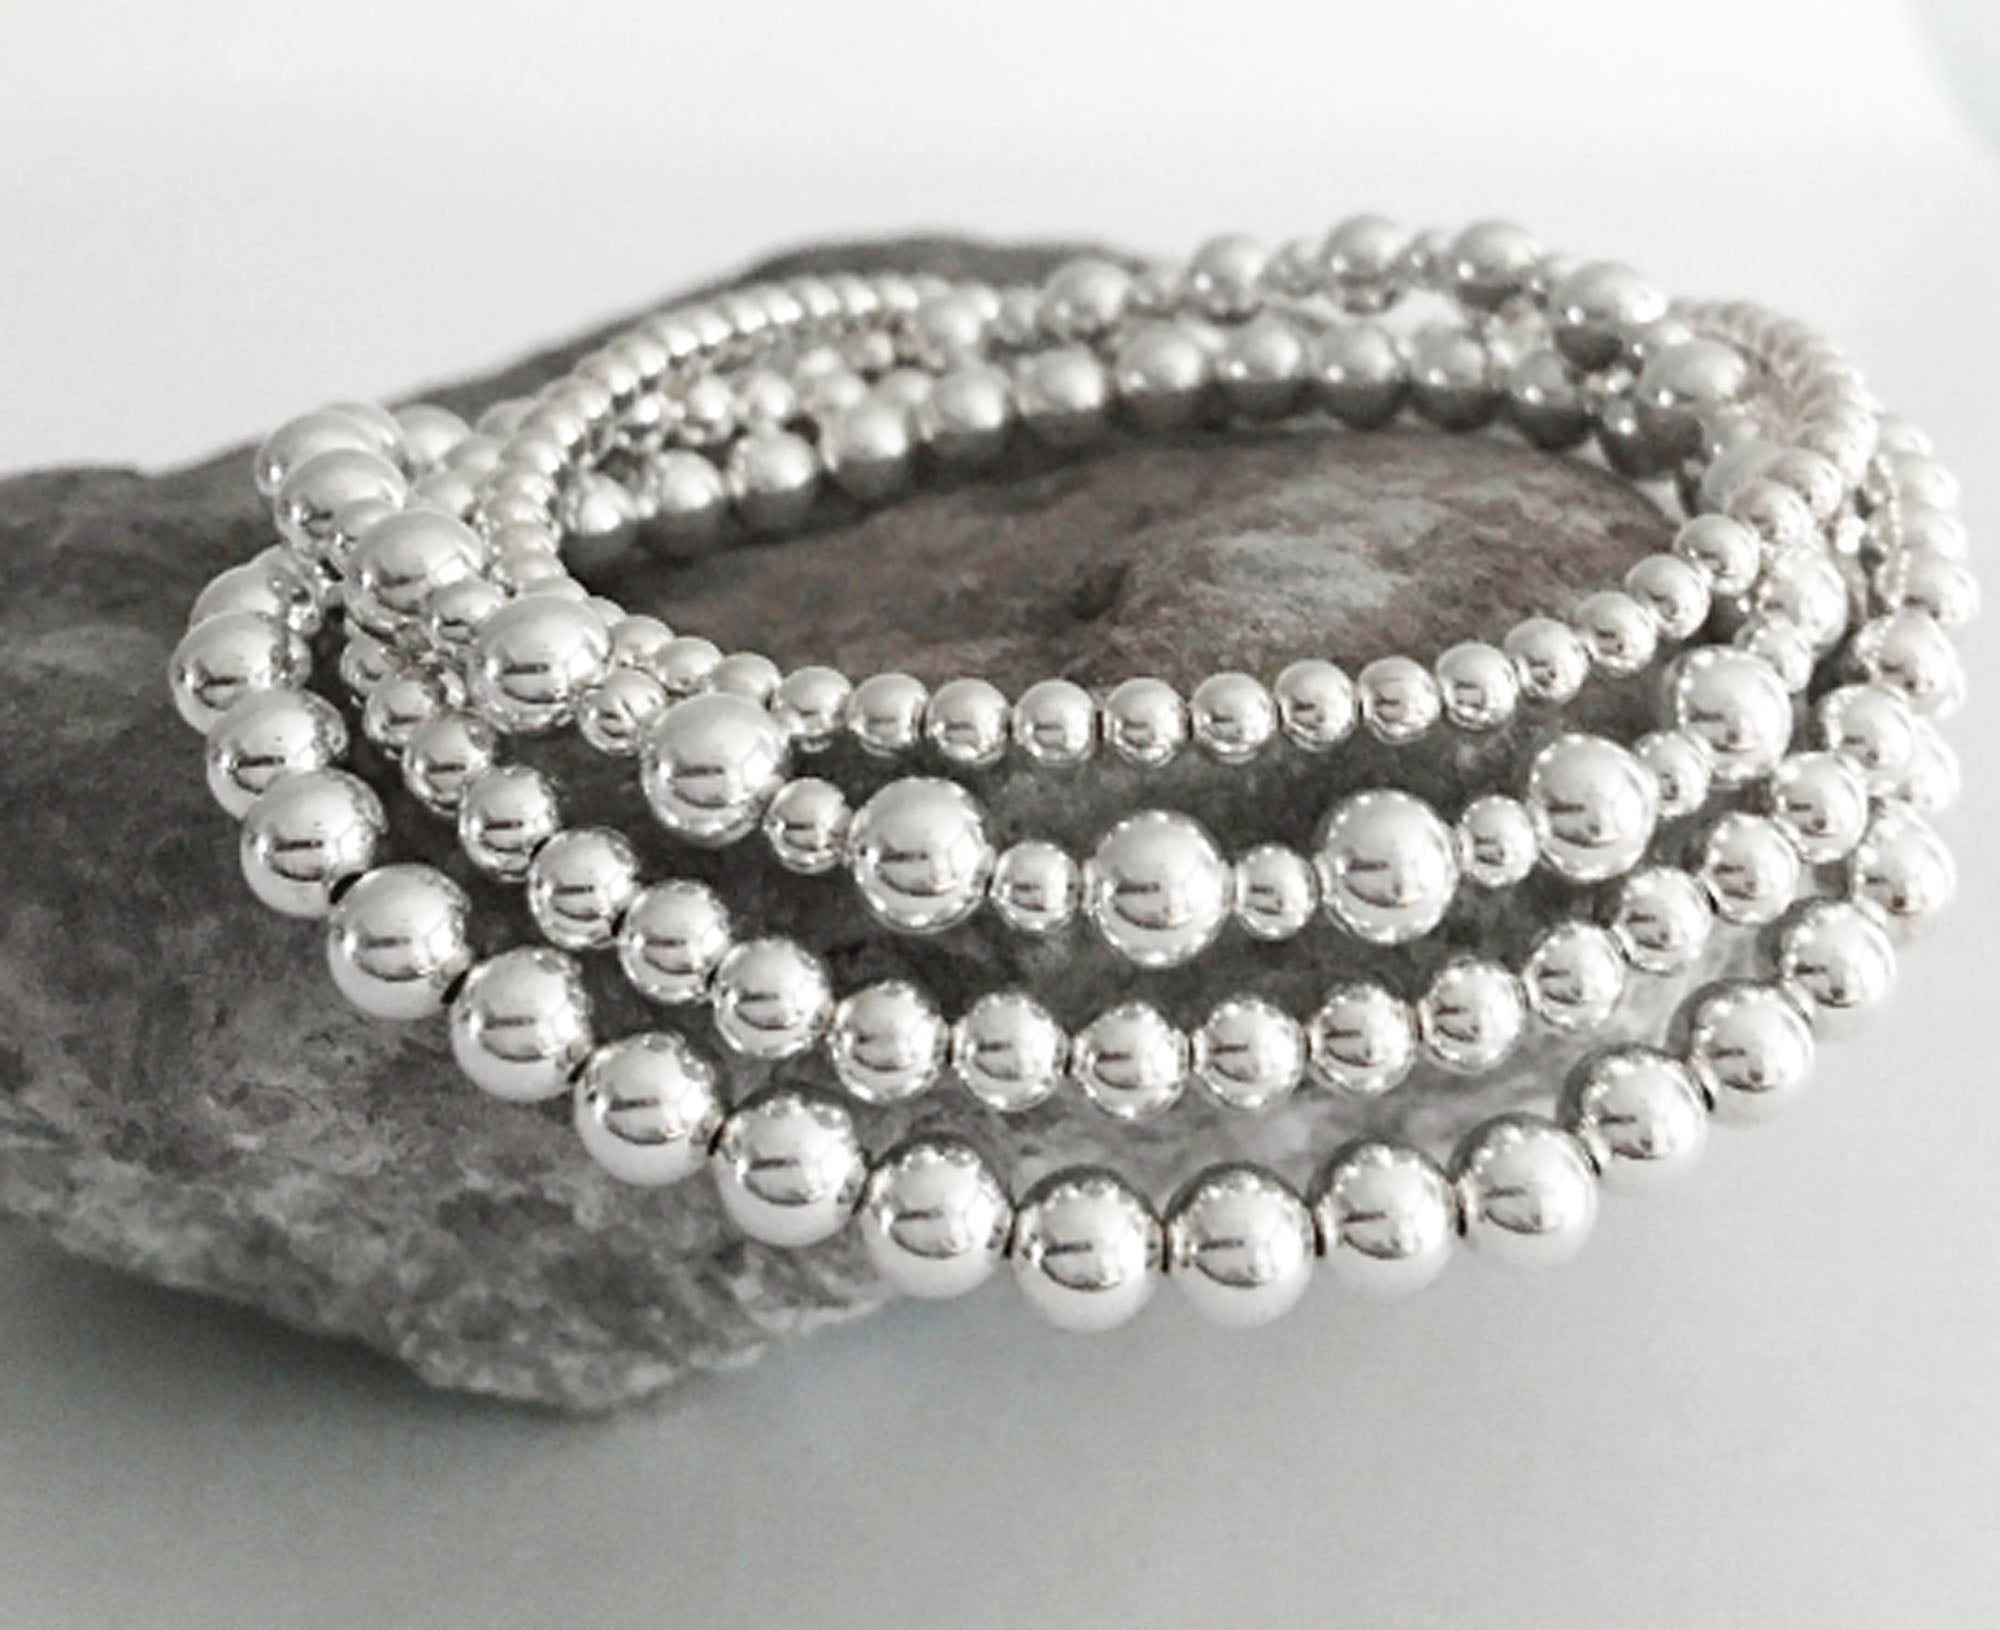 Appealing amethyst beads bracelet